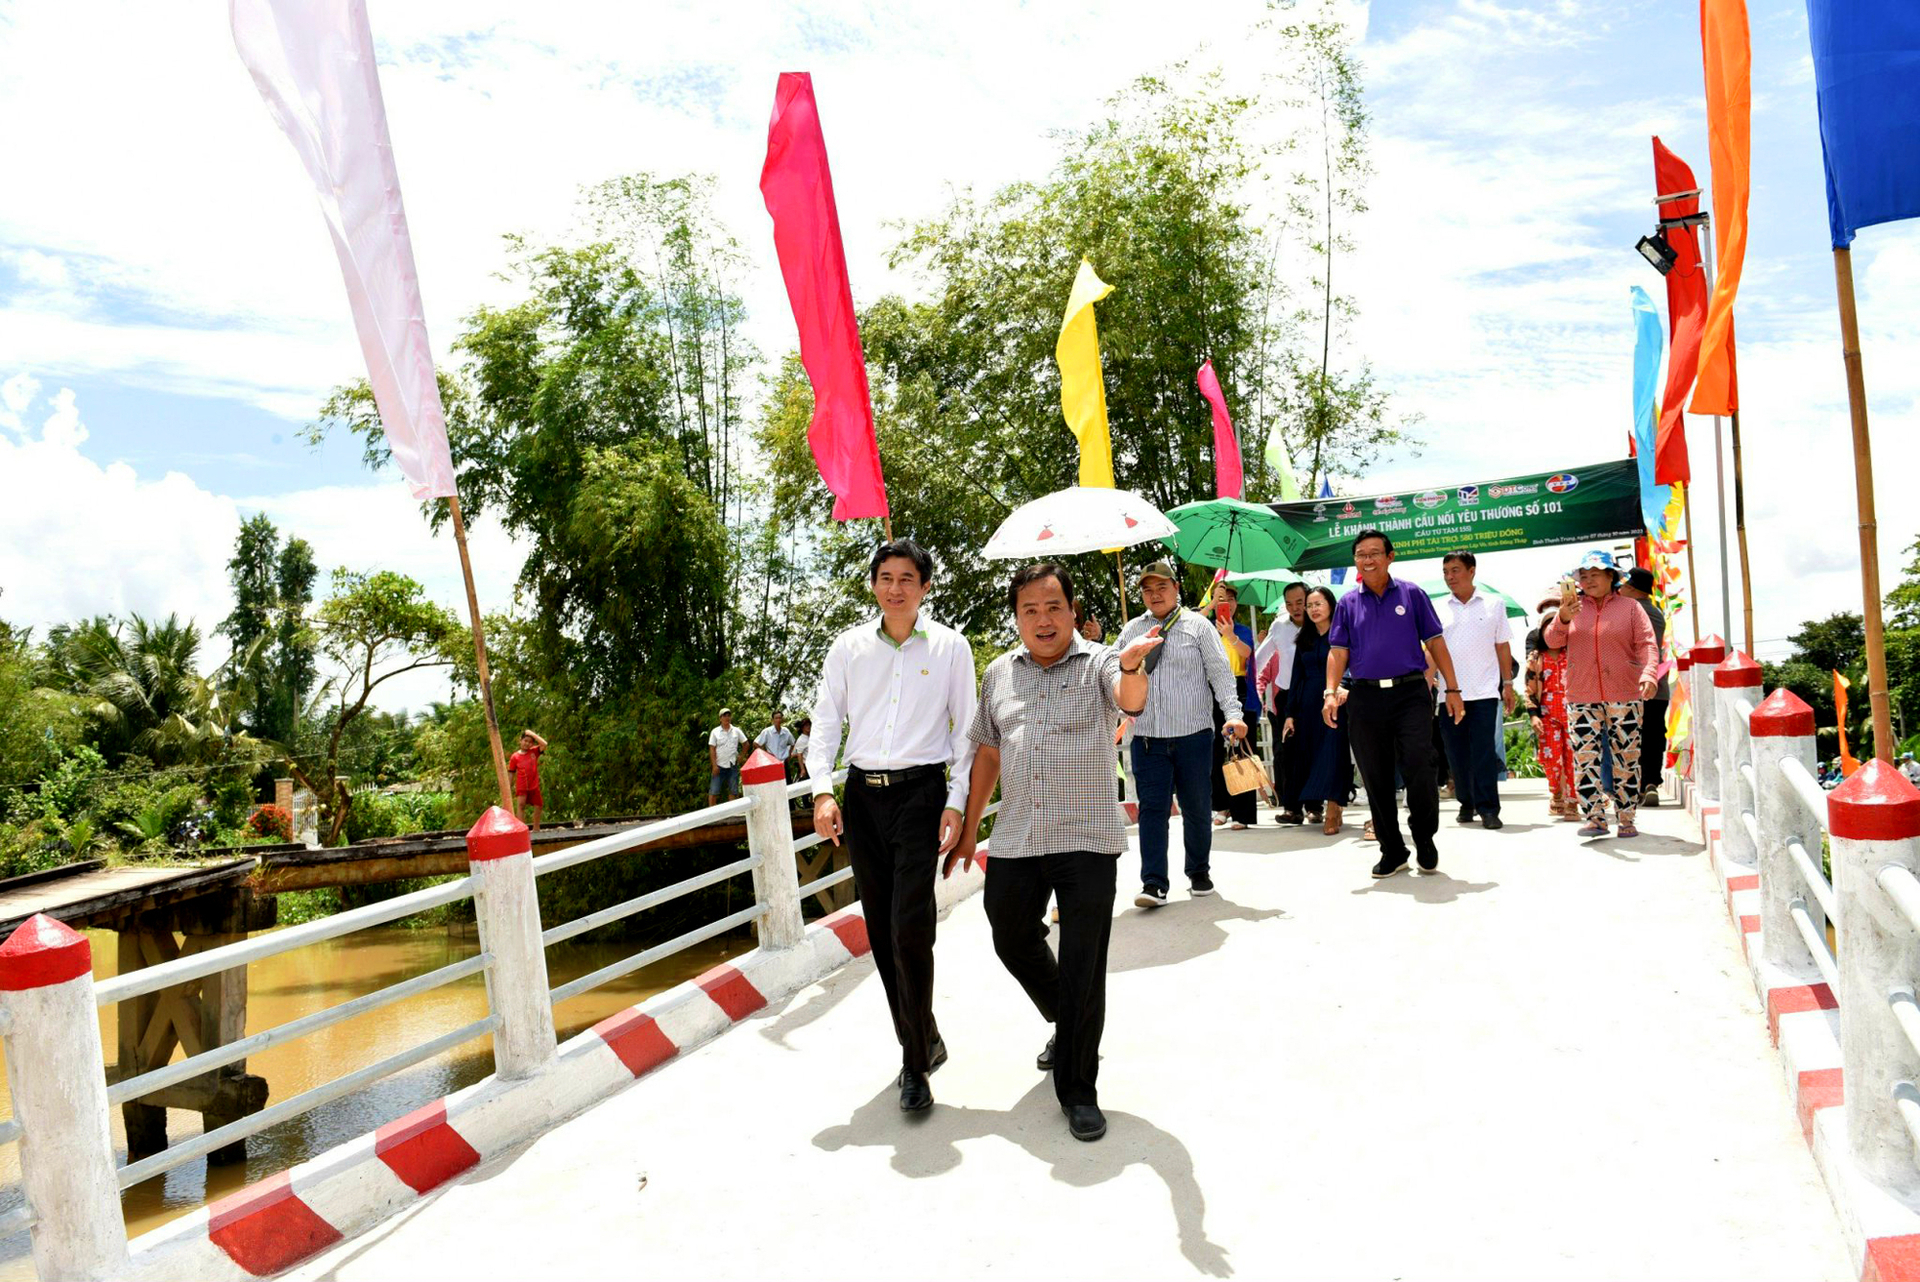 Chương trình 'Cầu nối yêu thương' về vùng Đất Sen hồng đến nay đã hỗ trợ xây dựng được 12 cây cầu. Ảnh: Lê Hoàng Vũ.